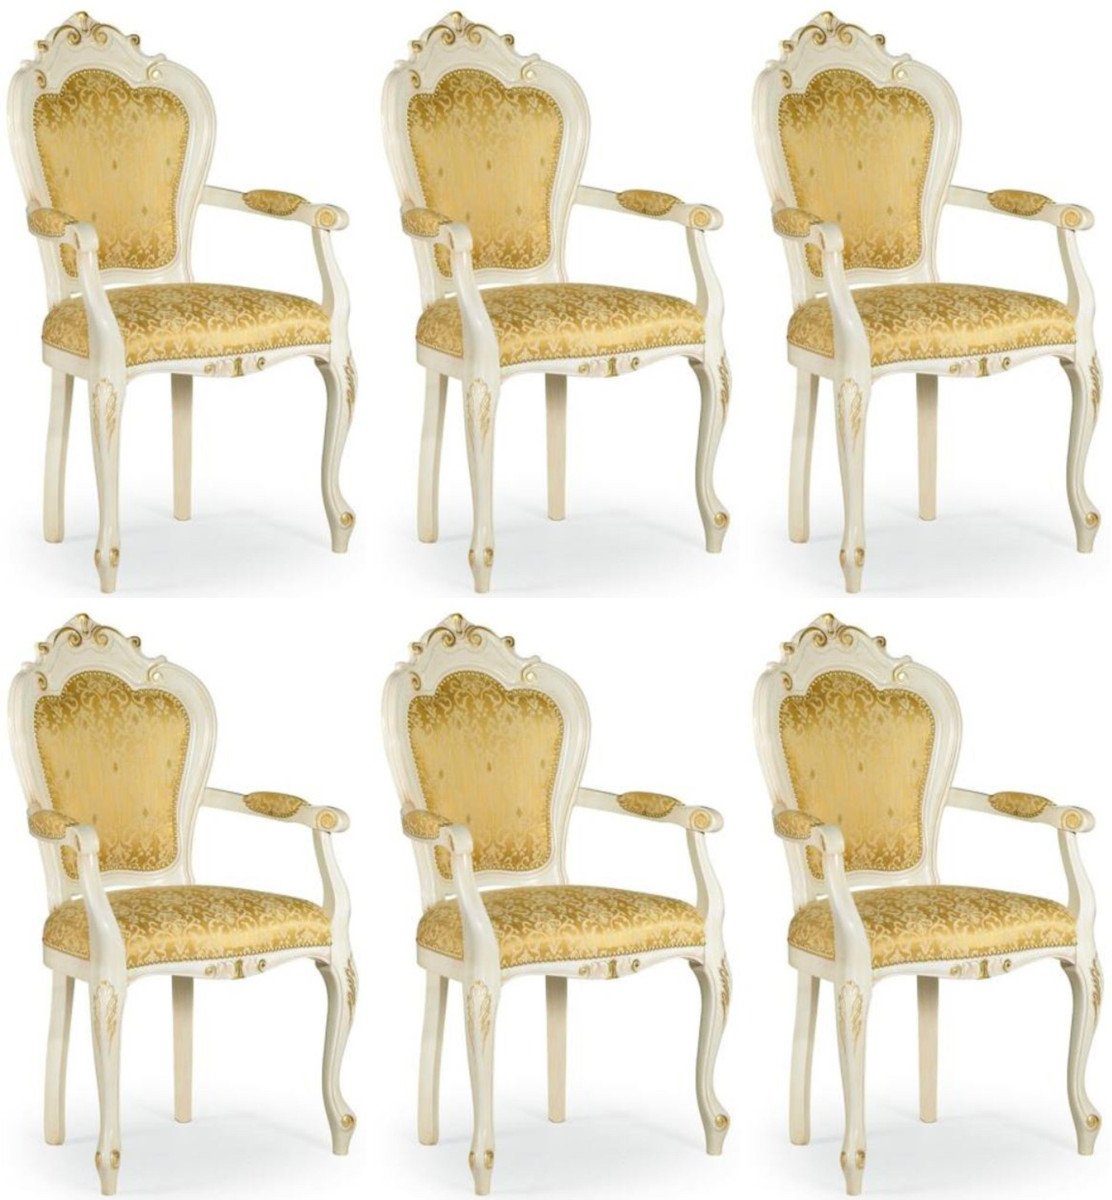 Casa Padrino Esszimmerstuhl Luxus Barock Esszimmer Stuhl Set mit Armlehnen Gold / Weiß / Gold 58 x 50 x H. 103 cm - Barock Küchen Stühle 6er Set - Esszimmer Möbel im Barockstil